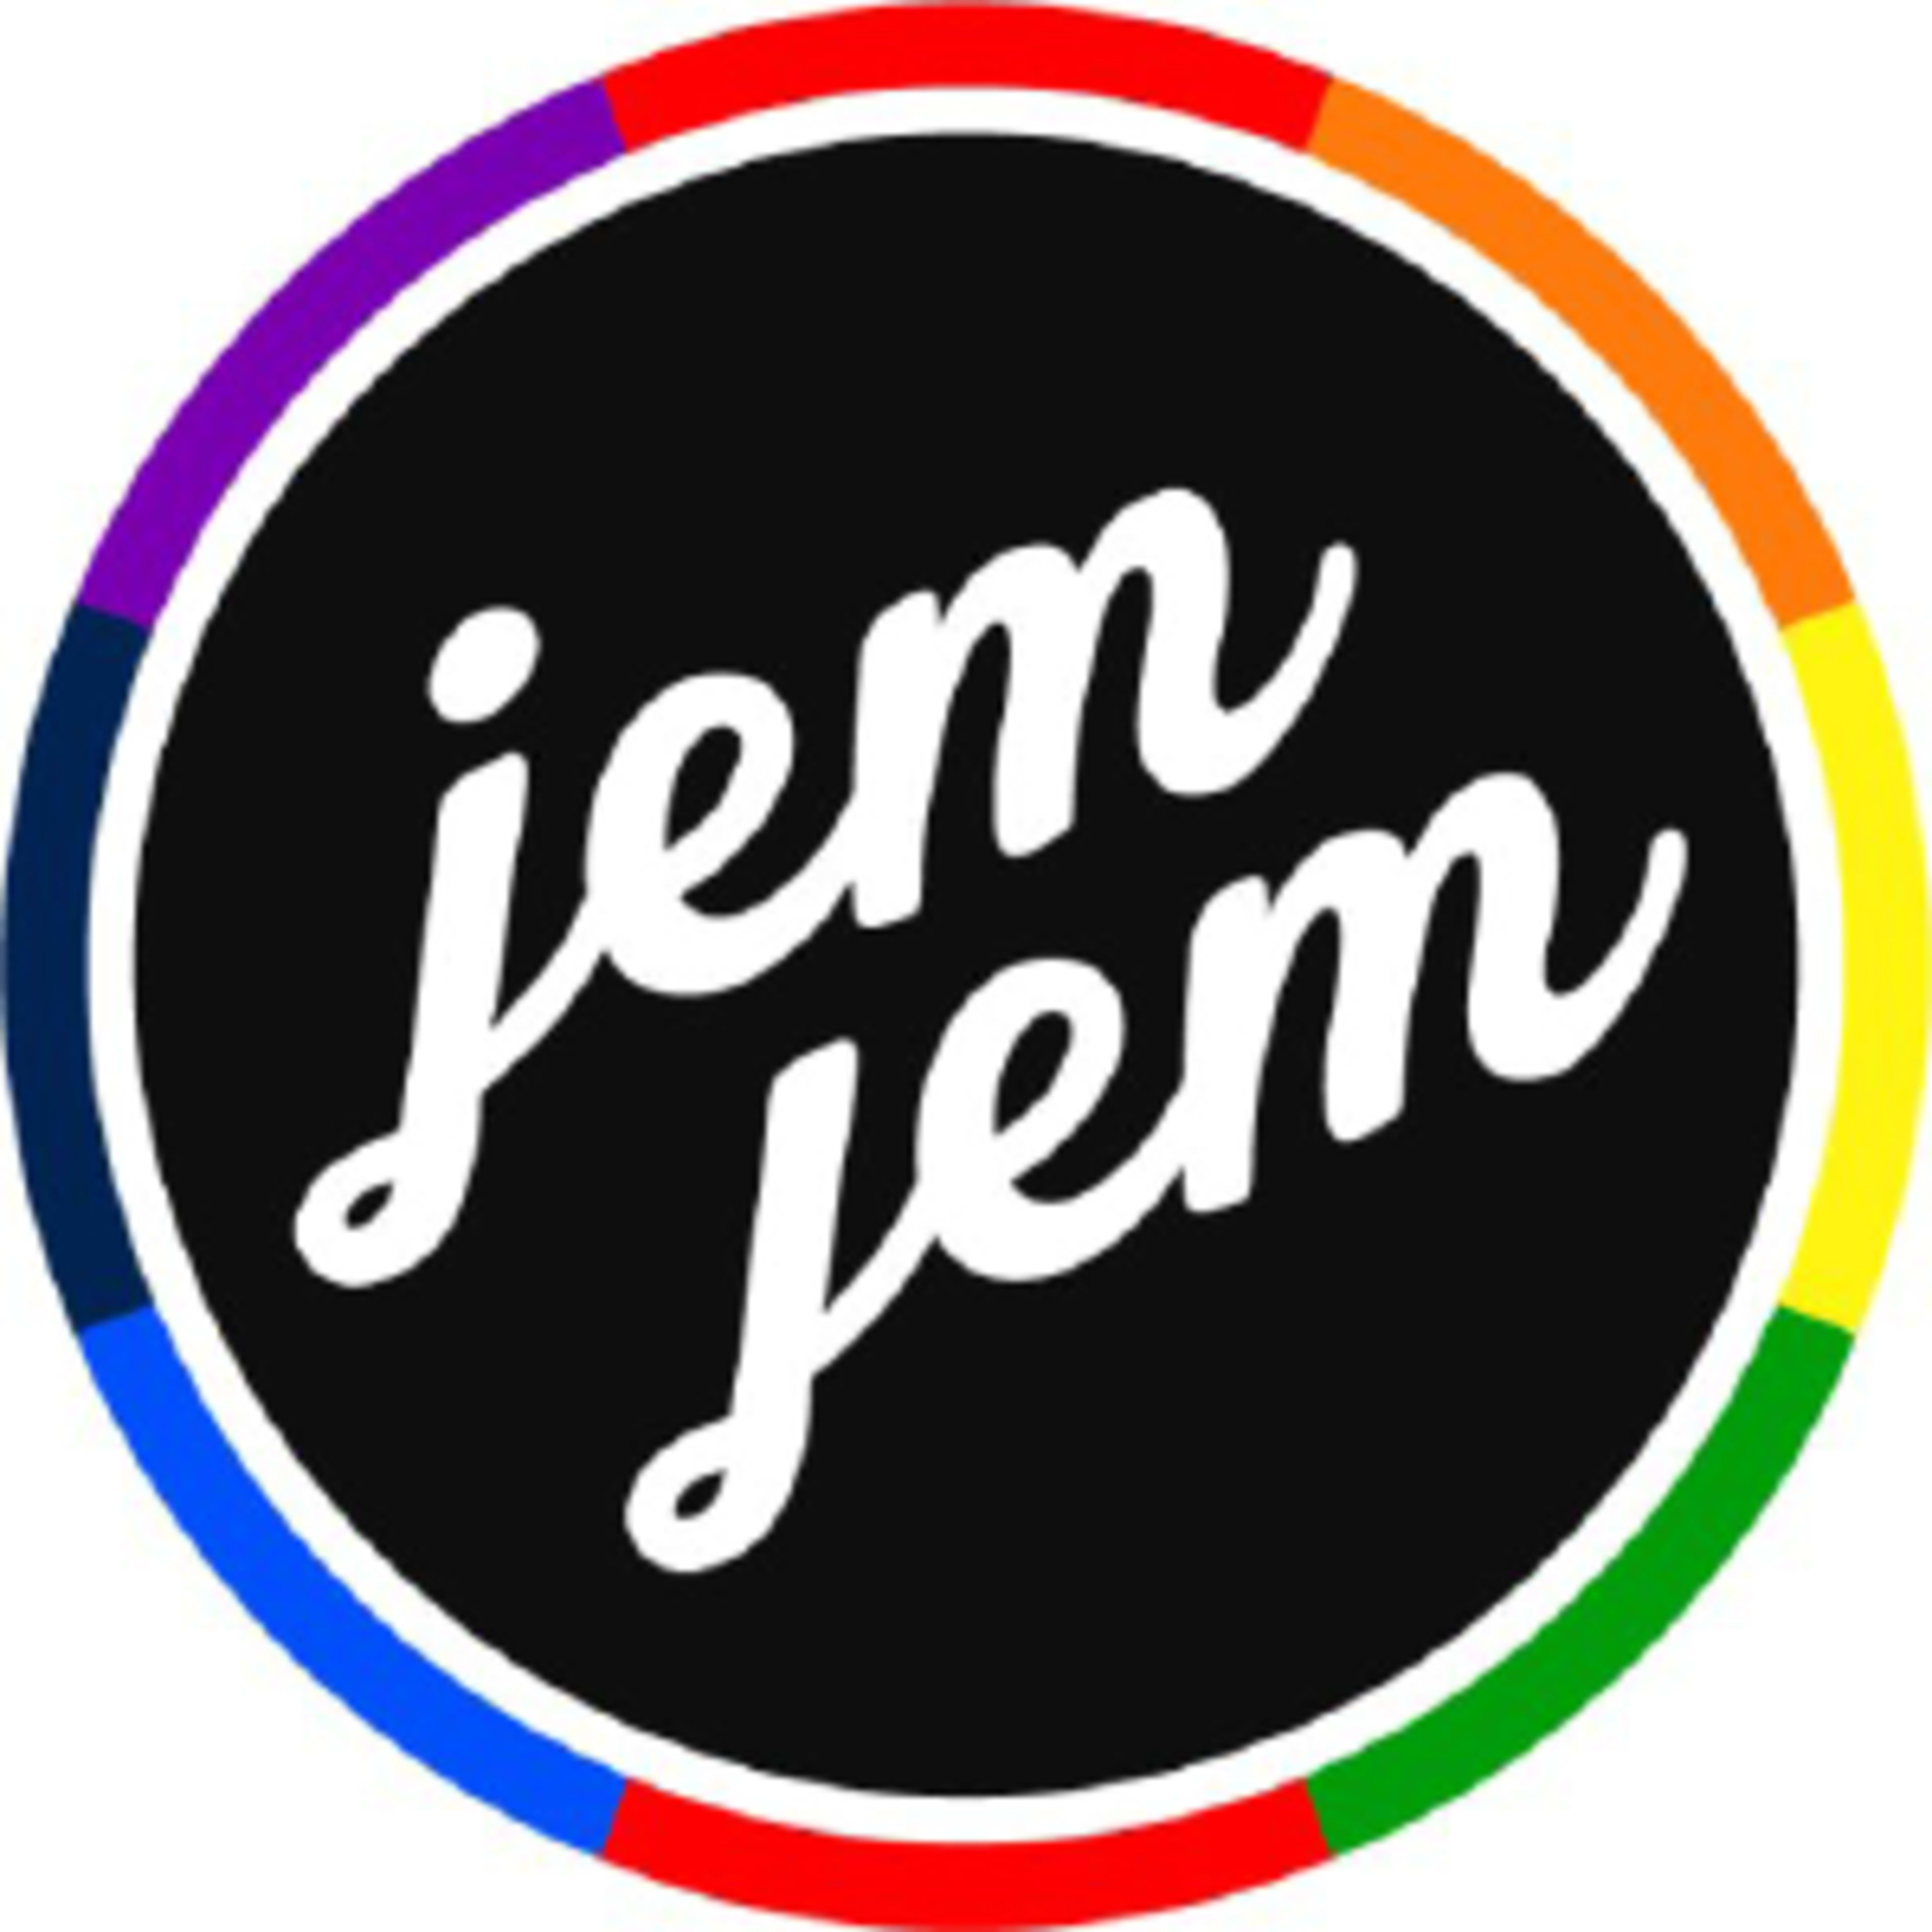 JemJem Code